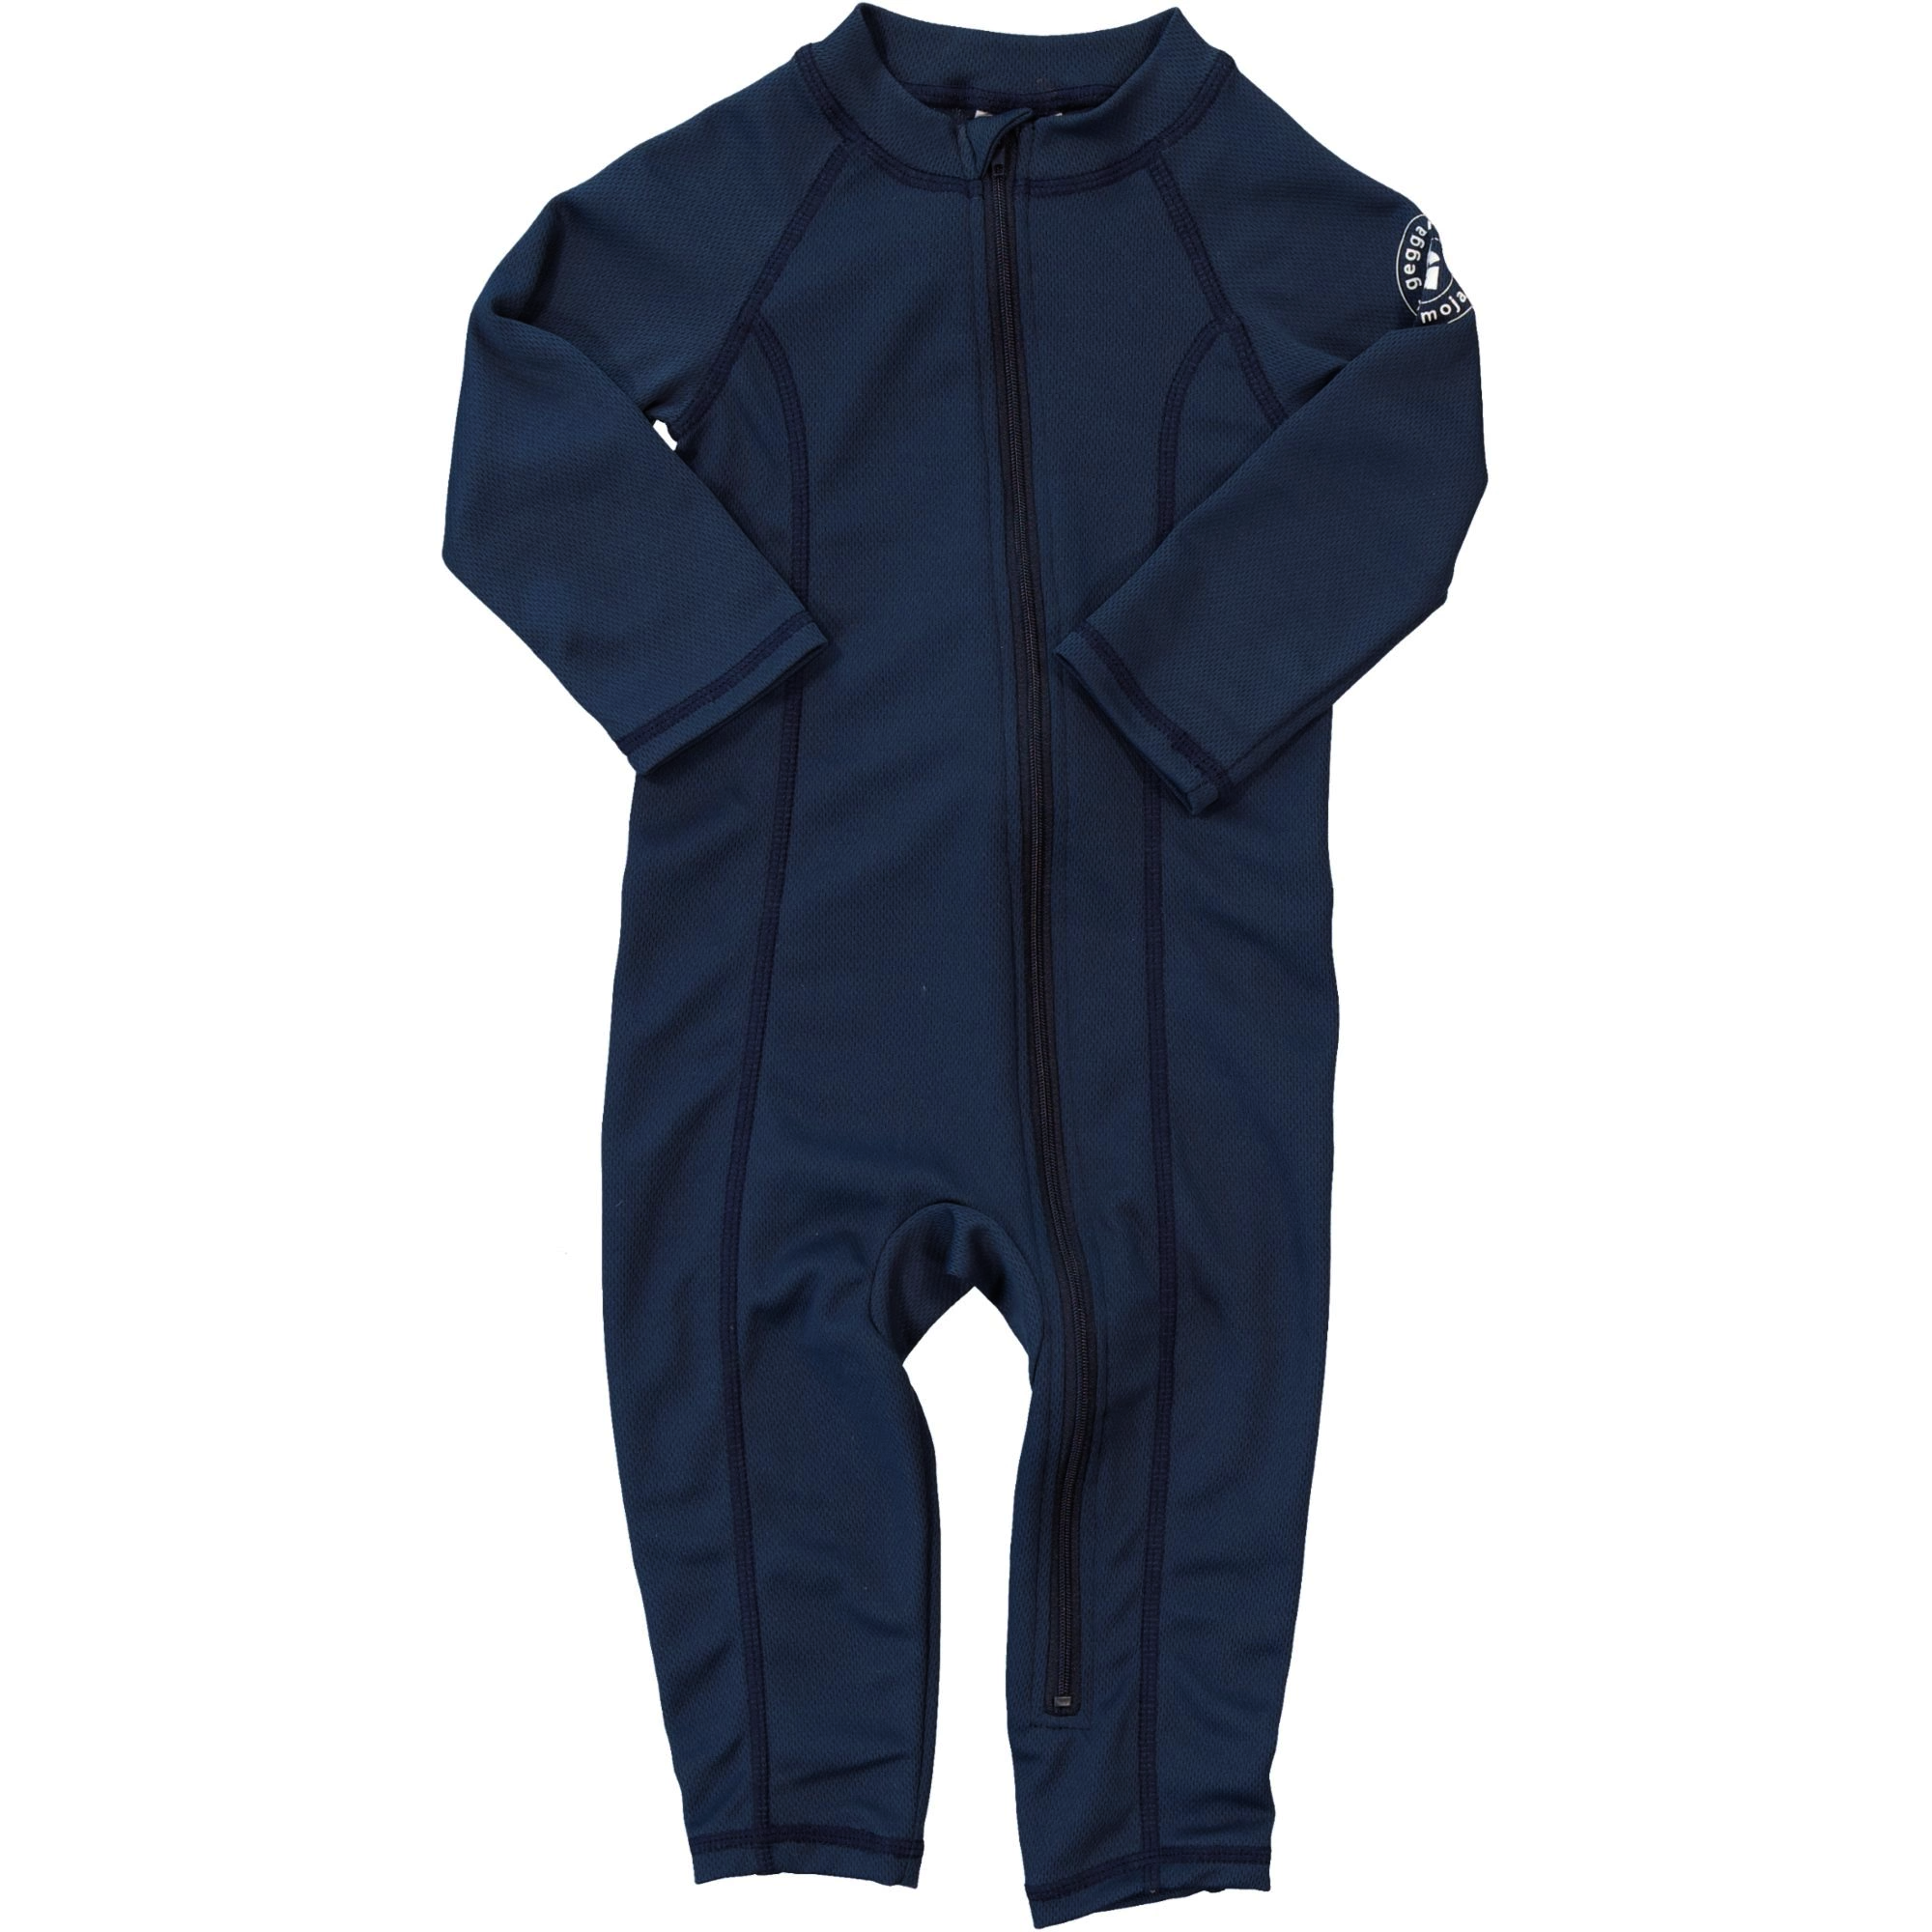 UV Baby suit Navy